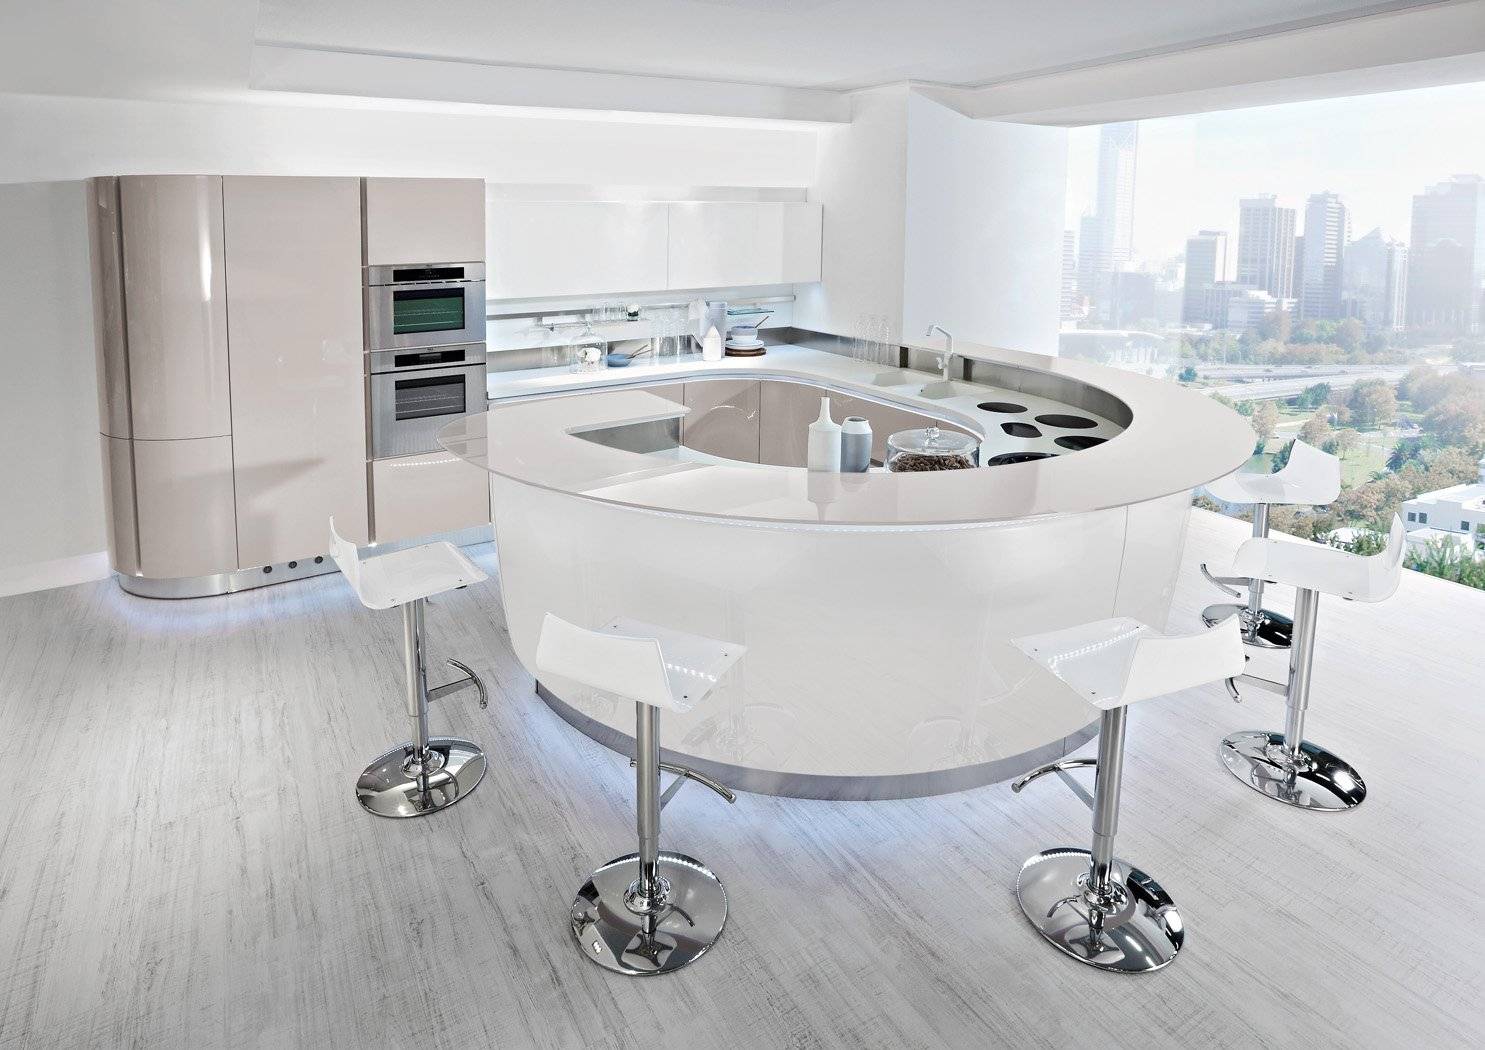 Круглые столы для кухни: 50 фото в интерьере, современные идеи оформления